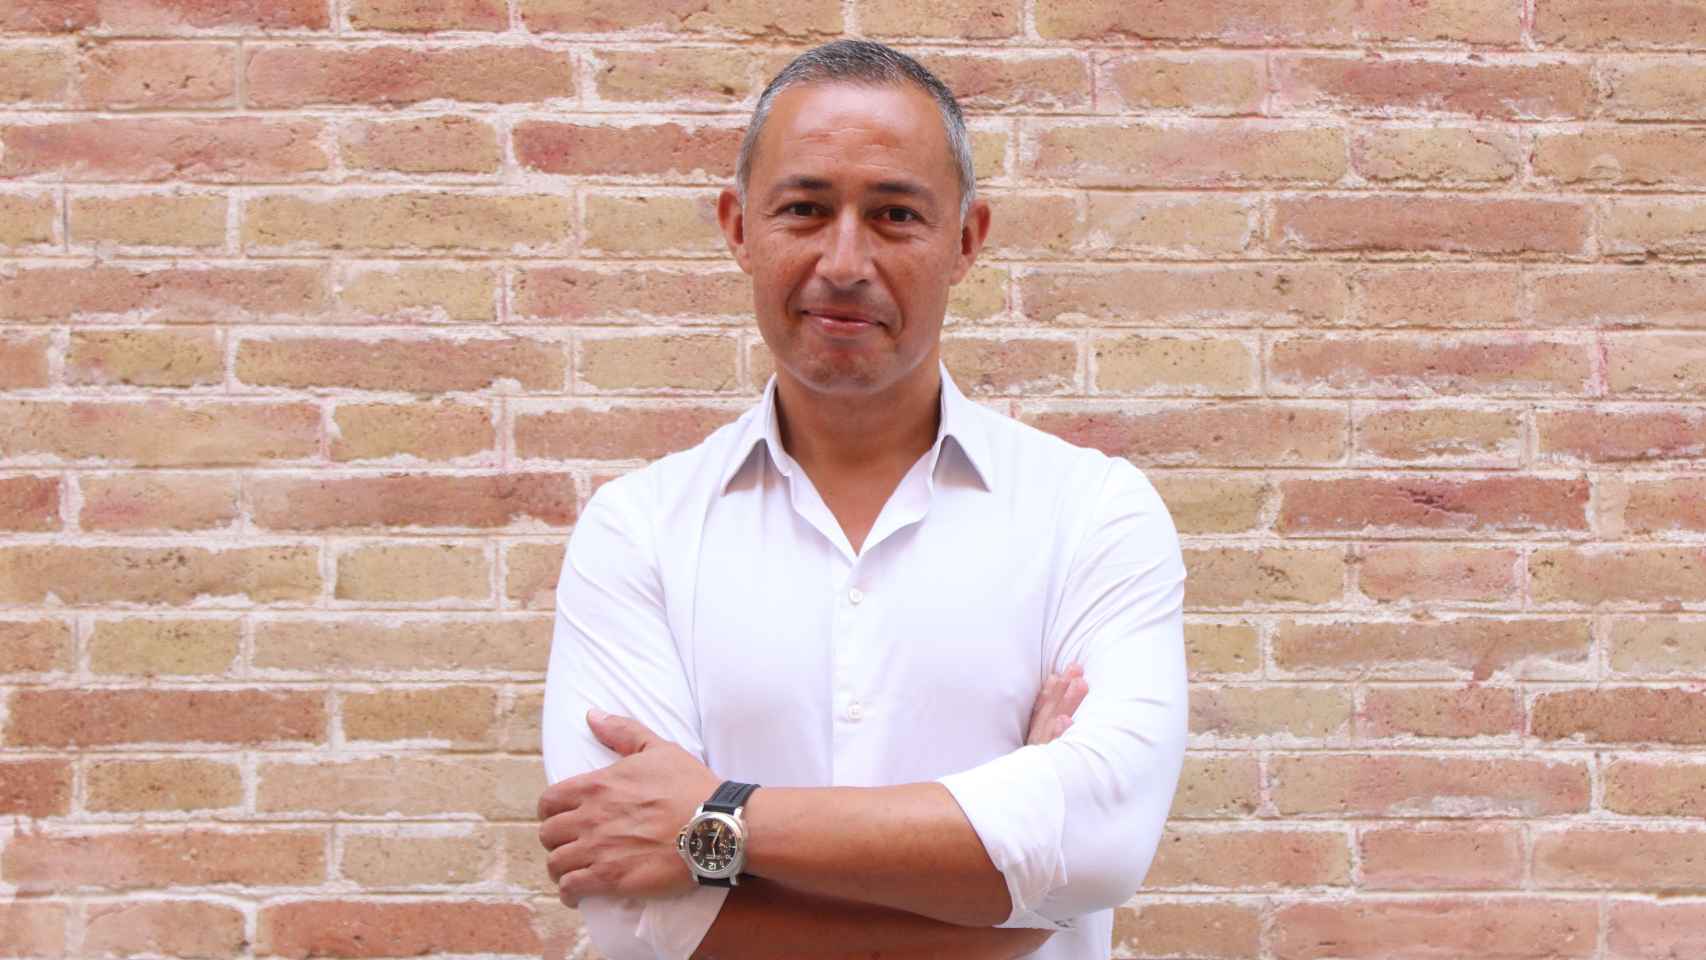 Jaime Jiménez fue nombrado recientemente CEO de Hastee, empresa inglesa que había comprado previamente su propia startup (Typs).